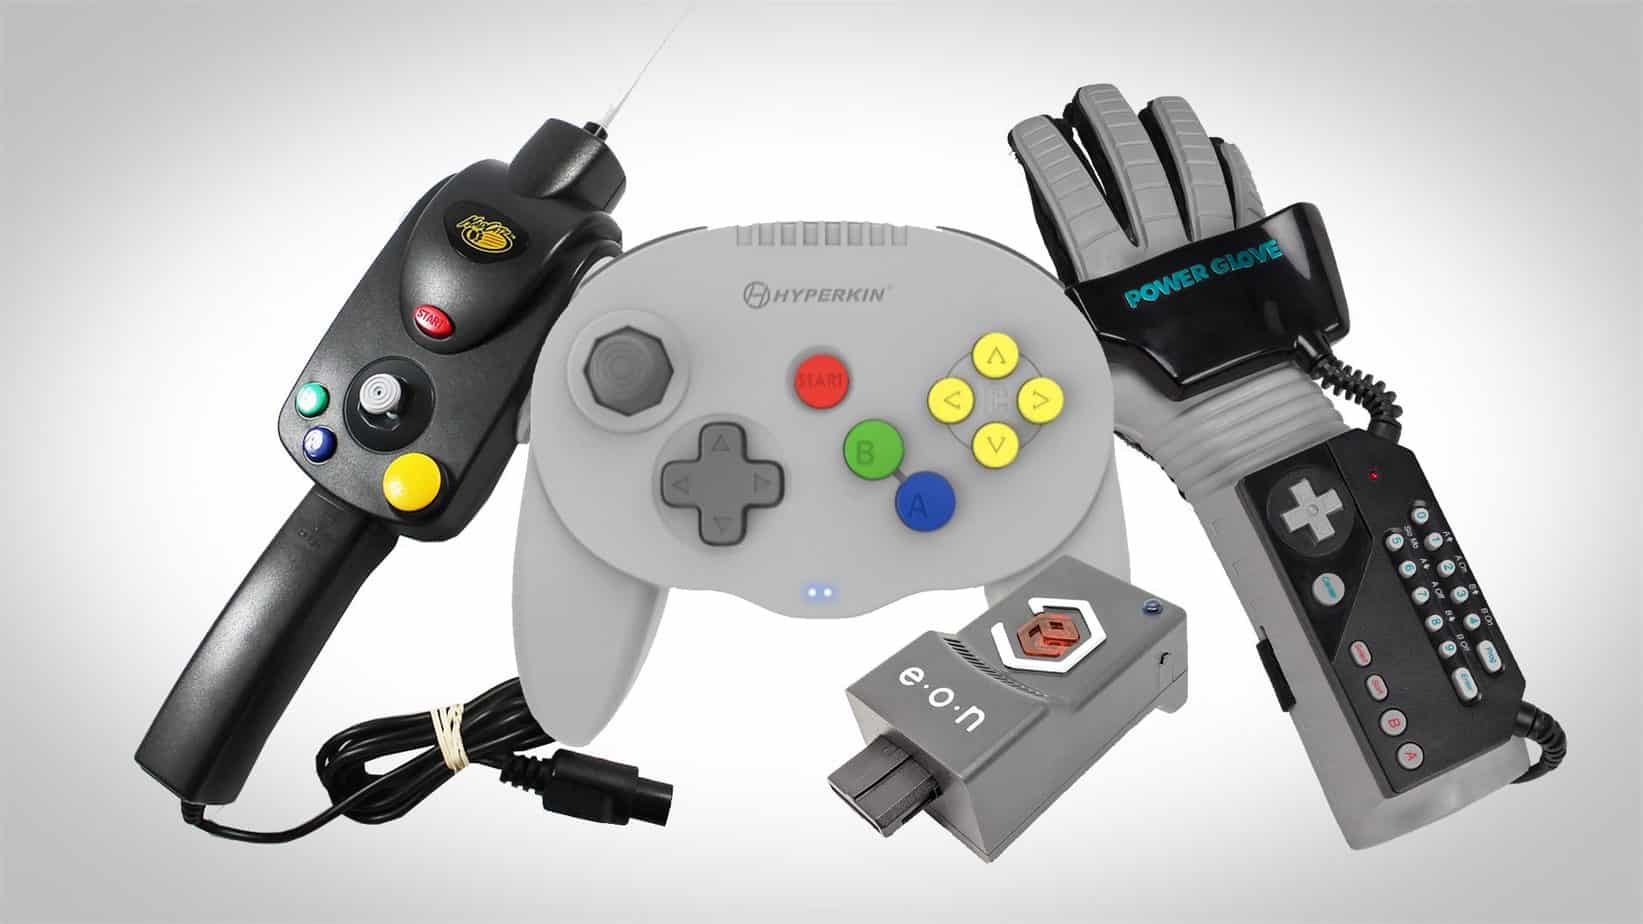  GameShark Pro : Nintendo 64 Accessories: Video Games